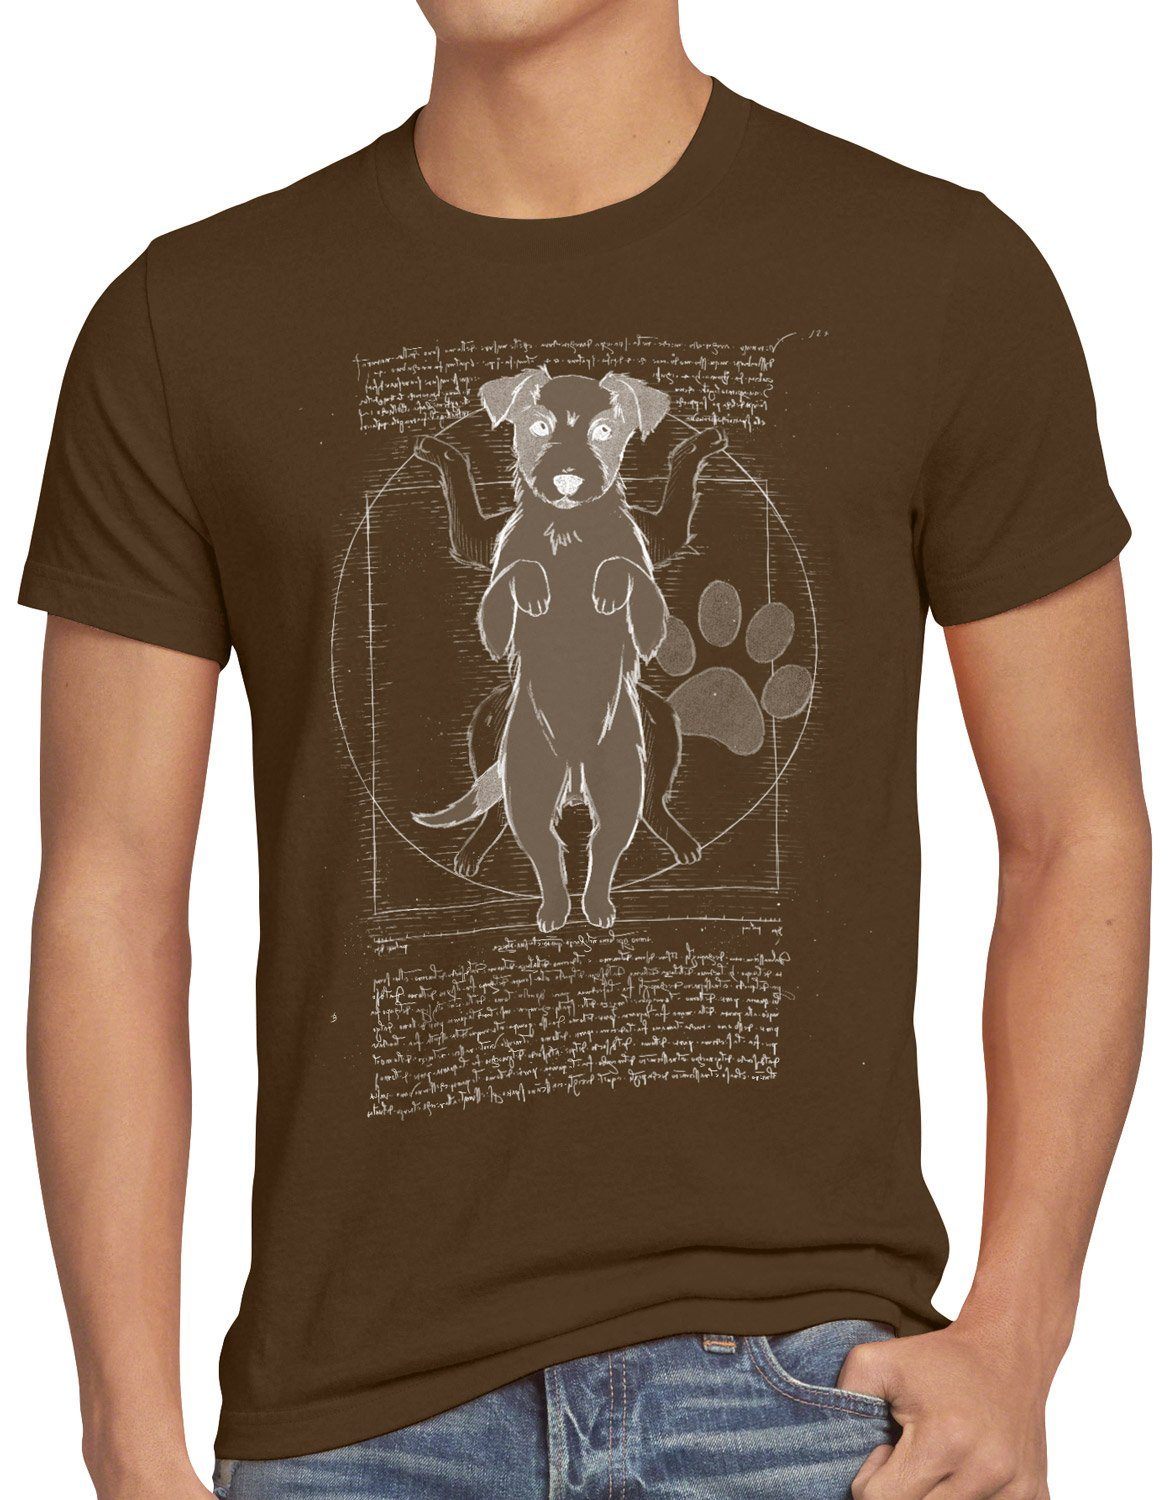 style3 Print-Shirt Herren T-Shirt Vitruvianischer Jack Russell hund terrier braun